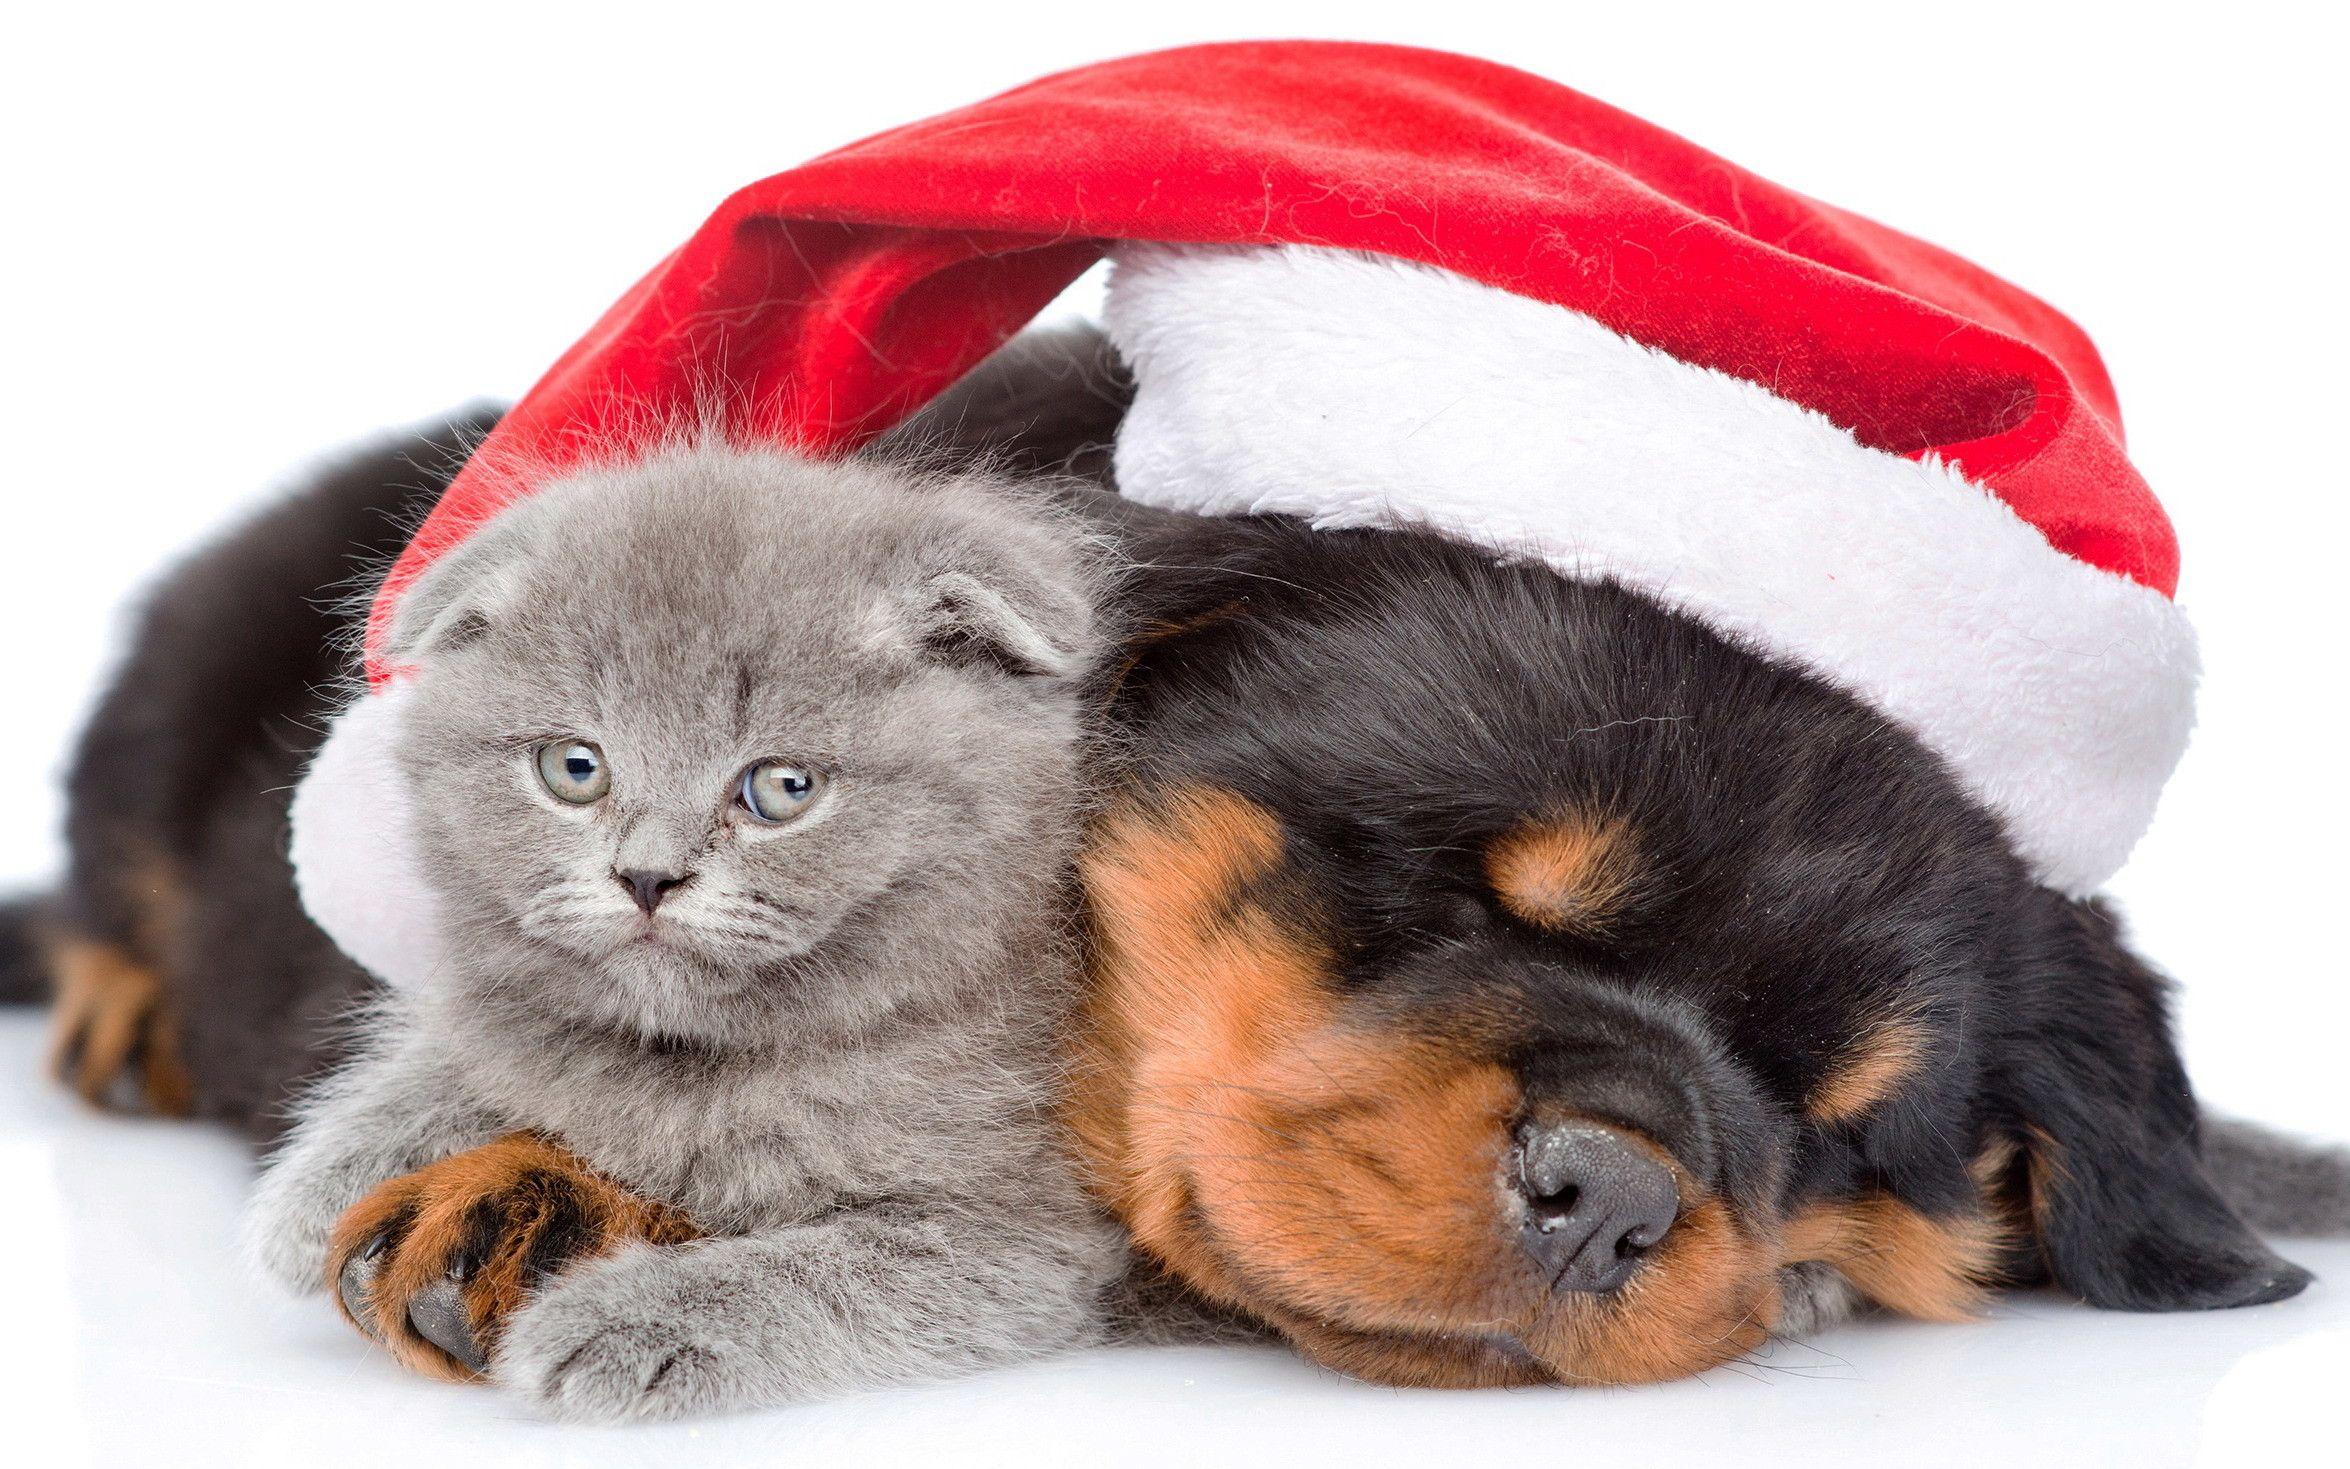 Christmas Kittens Wallpaper